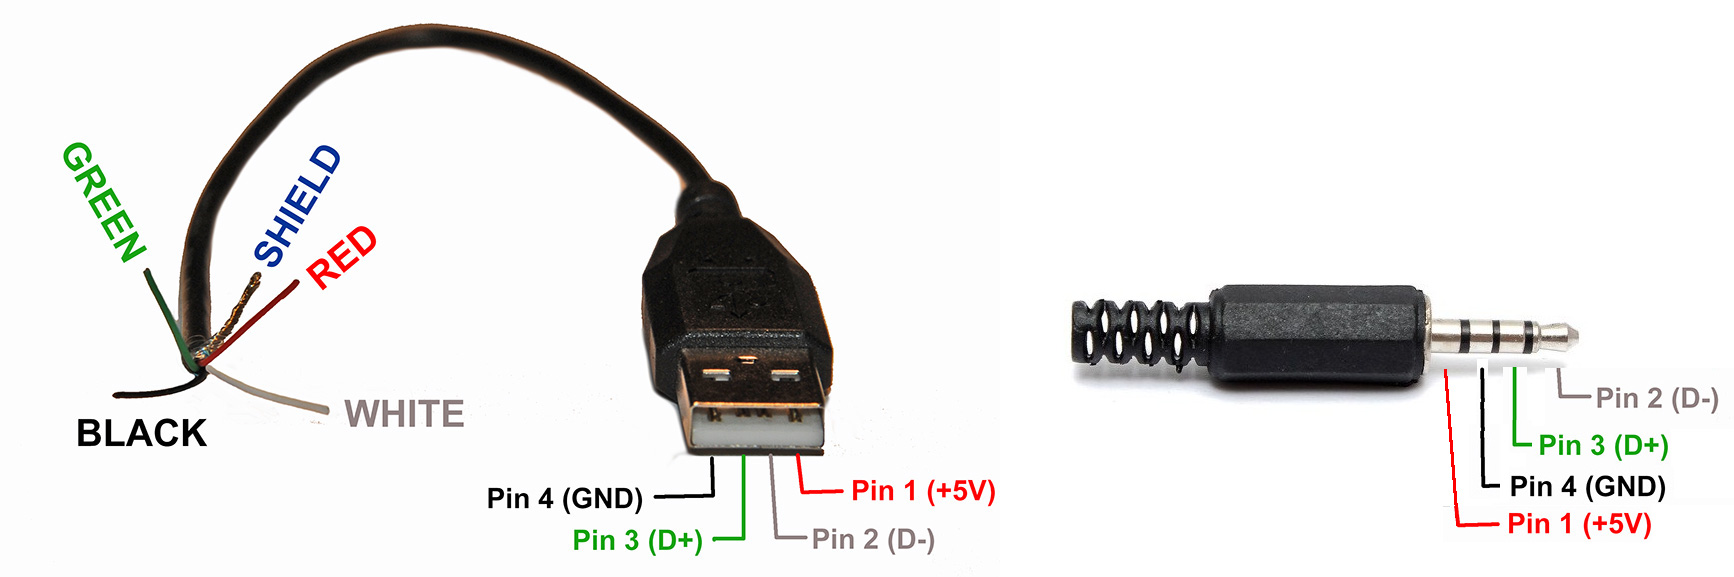 Питание usb mini. Разъём Mini USB распайка. Распайка USB 2.0 разъема плюс. Распайка штекера USB 2.0. Схема пайки юсб разъема.